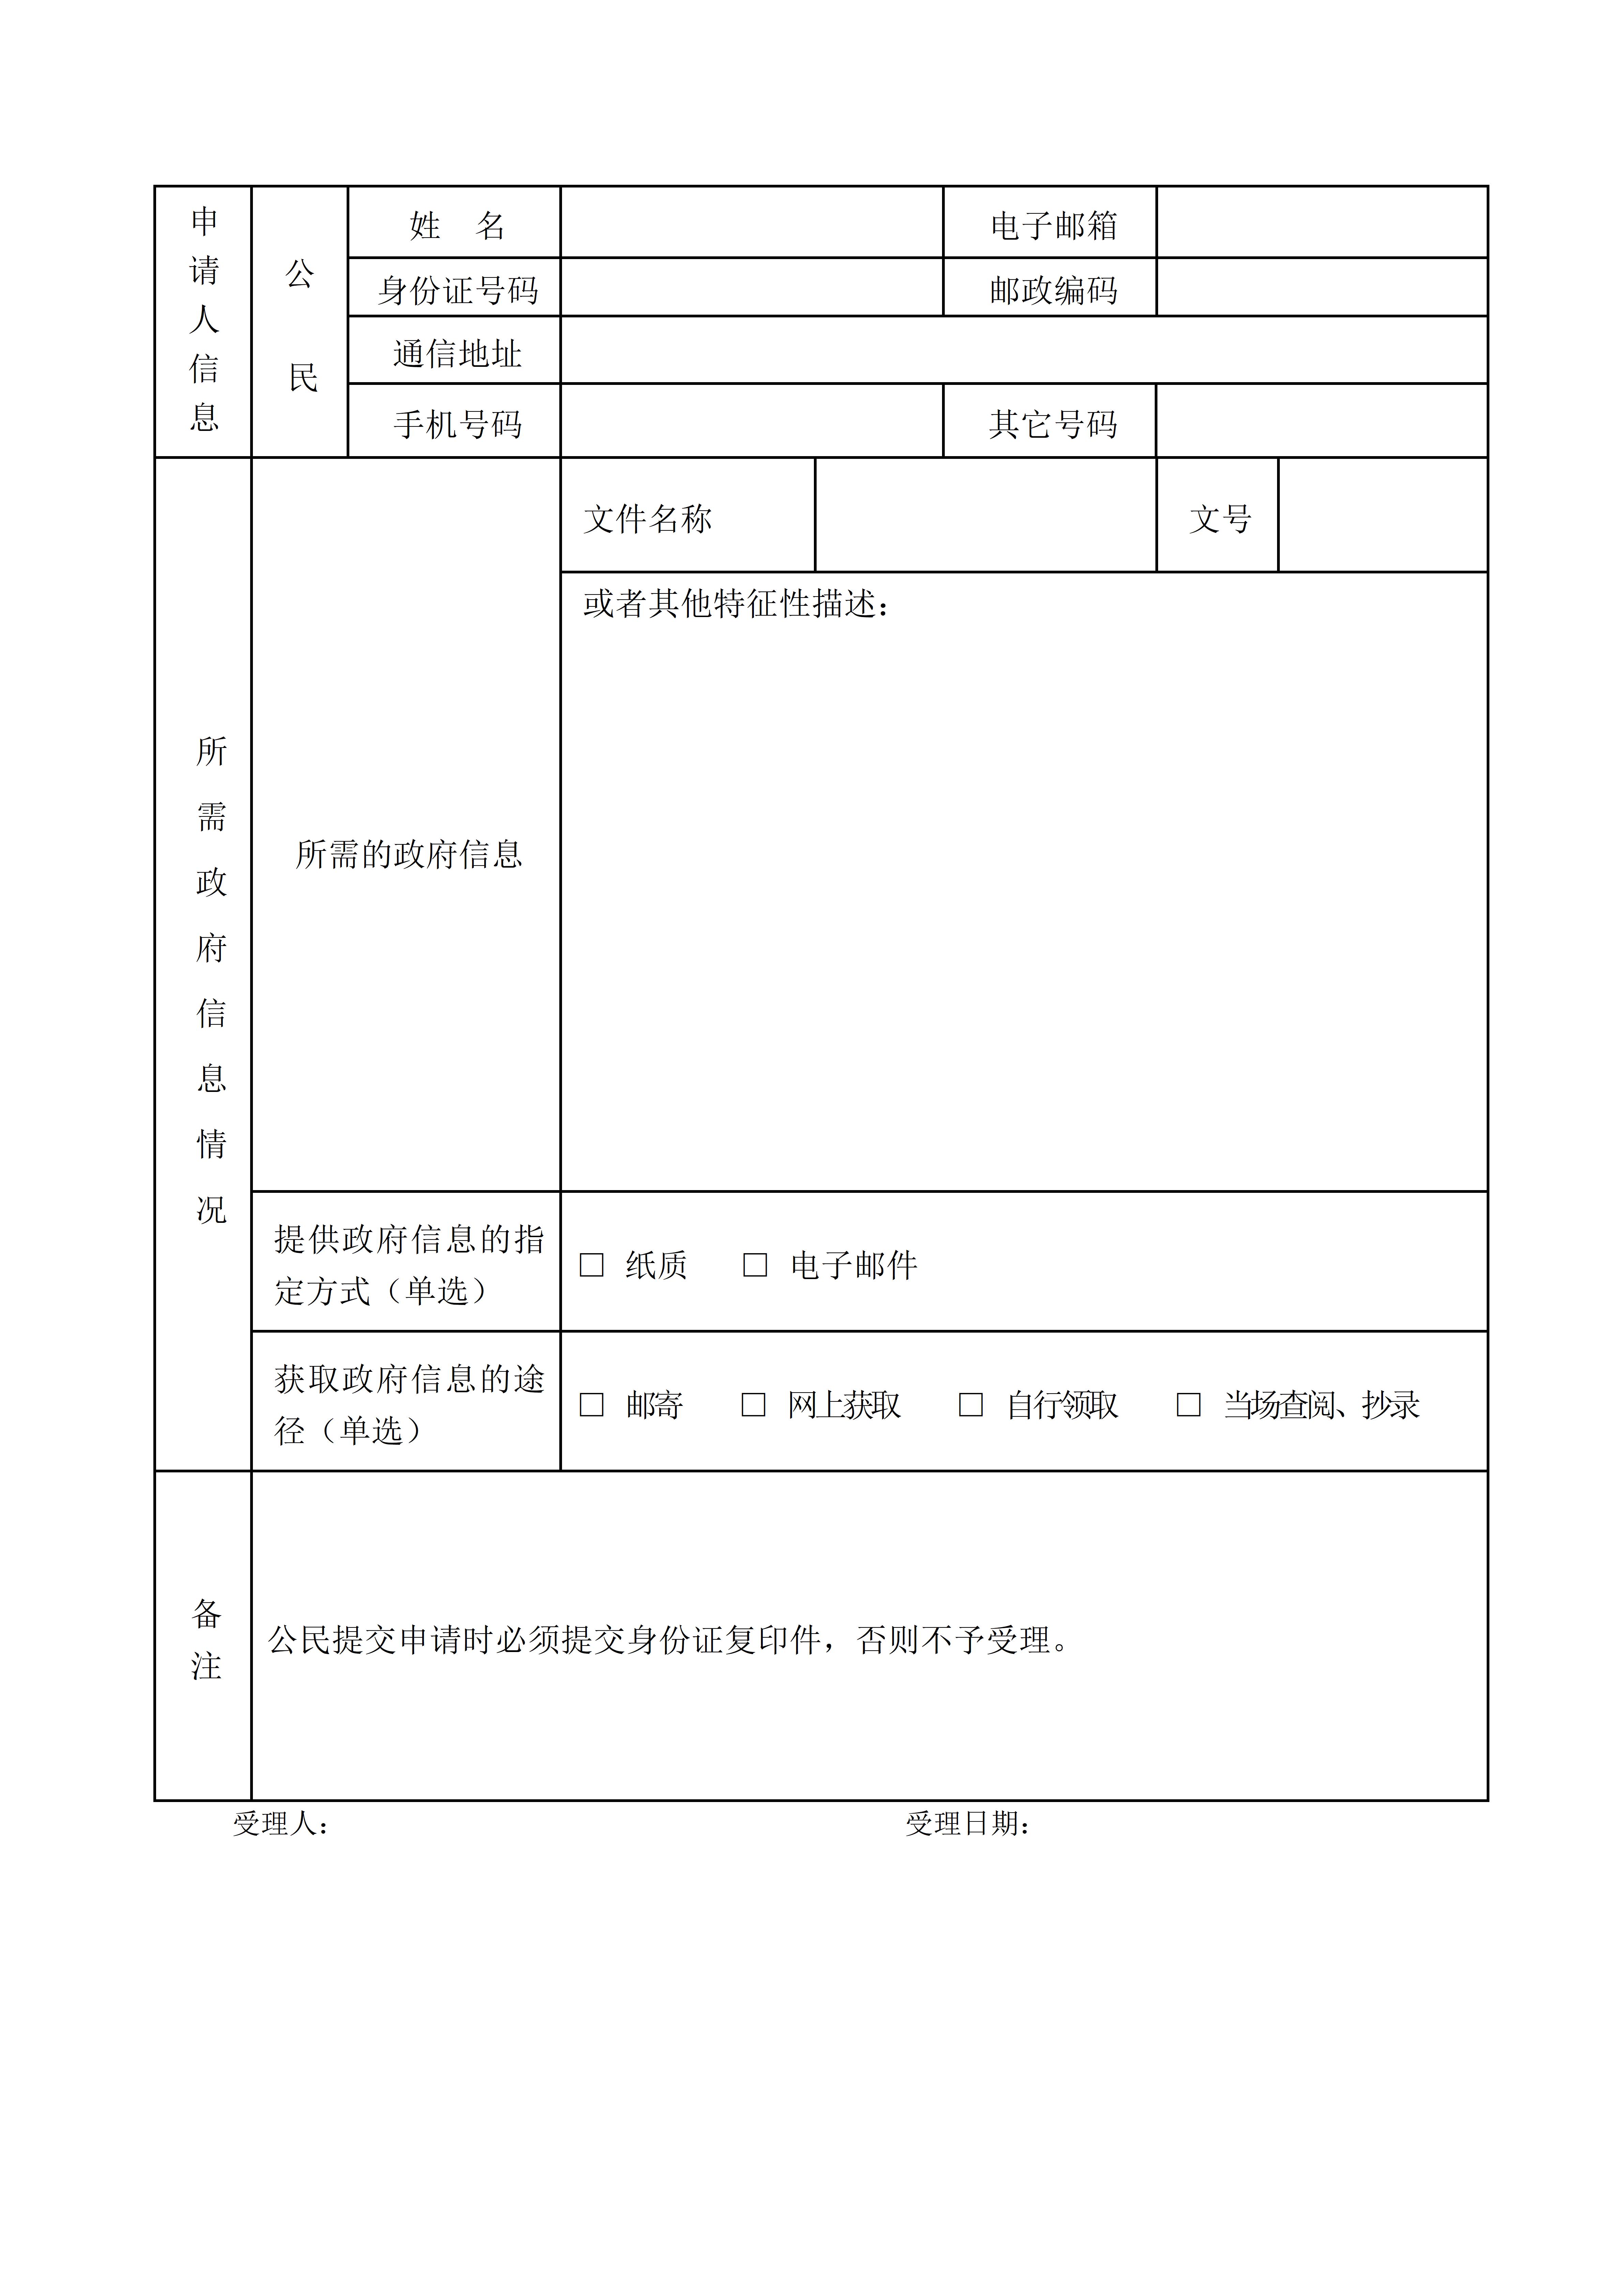 附件1：恩平市社会保险基金管理局信息公开申请表【公民】_01.jpg